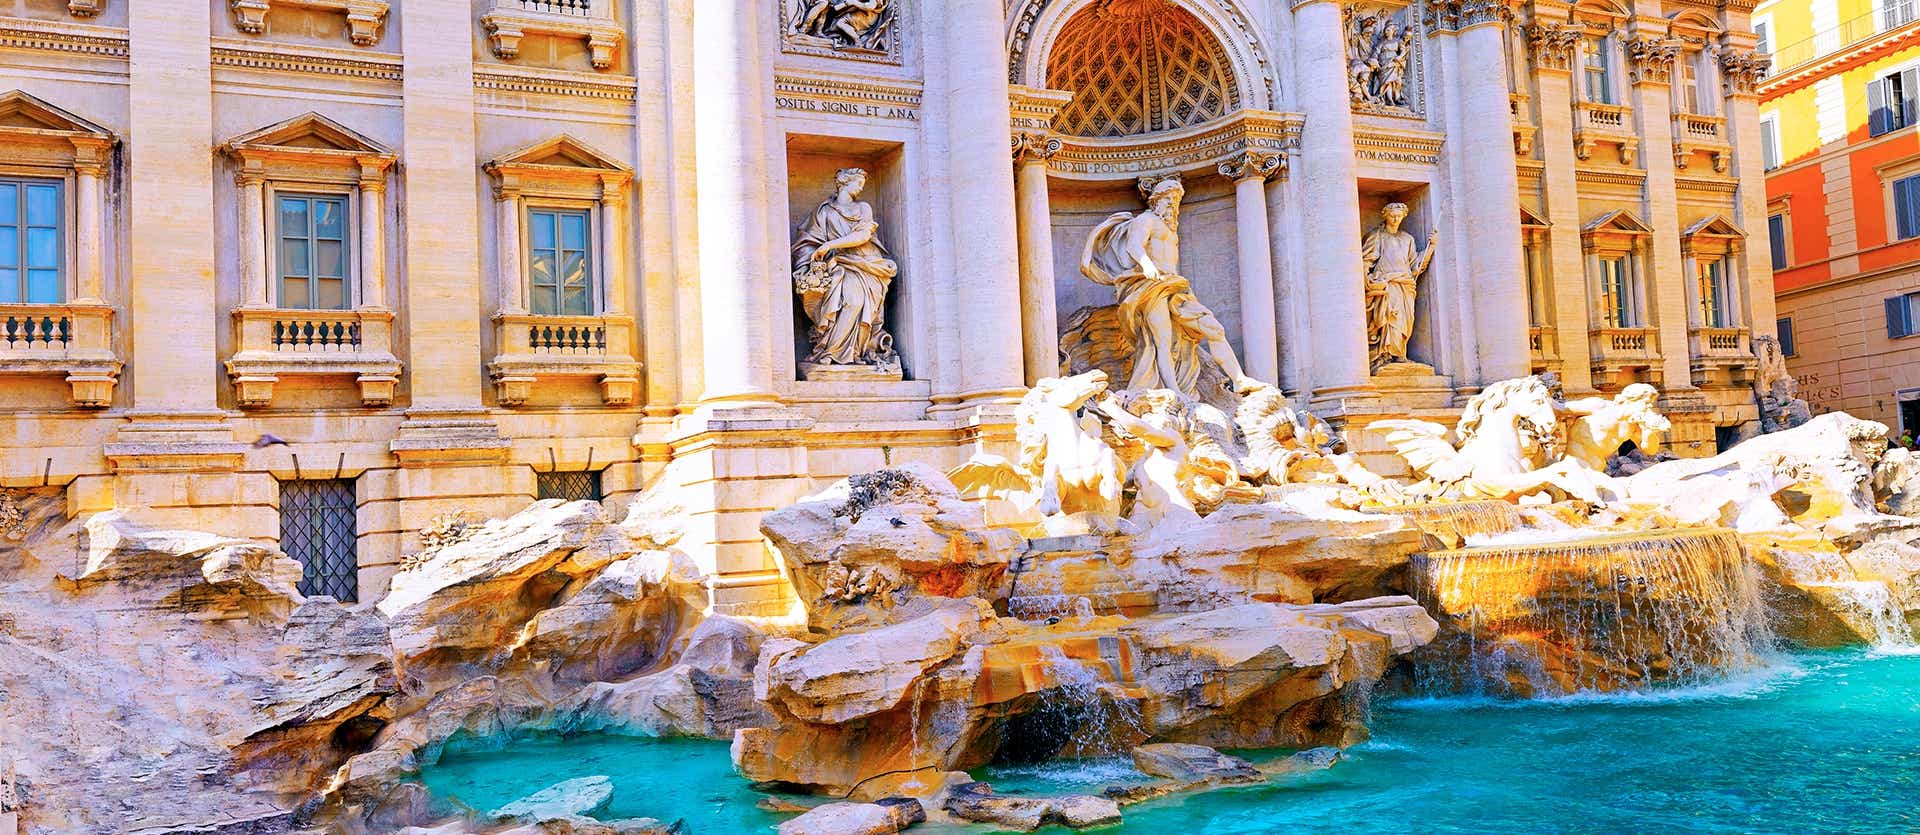 Trevi Fountain <span class="iconos separador"></span> Rome <span class="iconos separador"></span> Italy